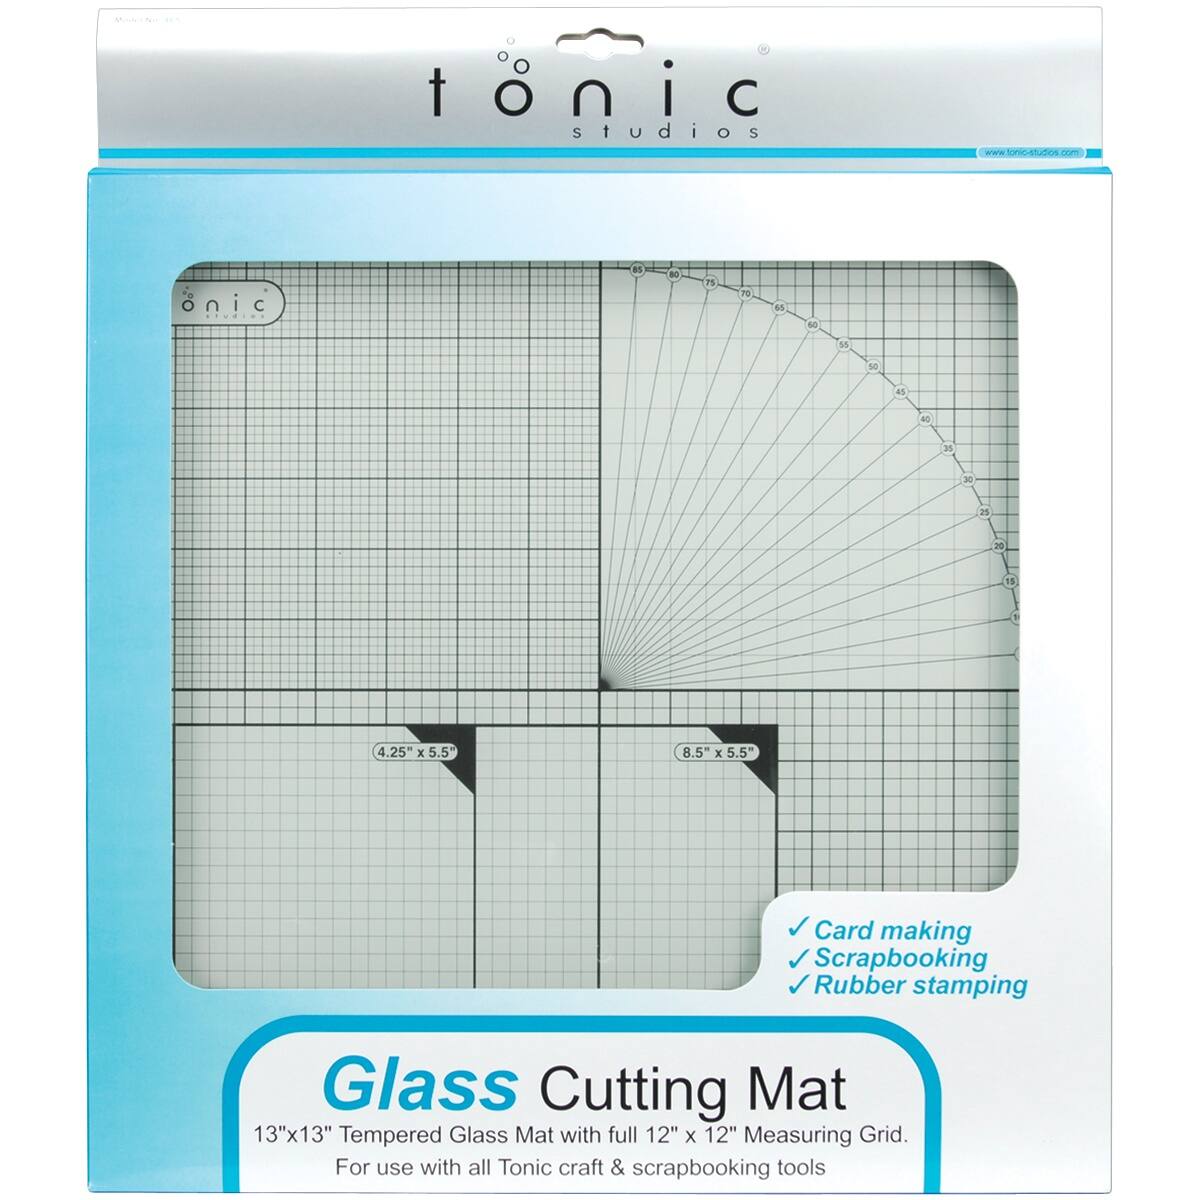 Tonic Studios Tempered Glass Cutting Mat